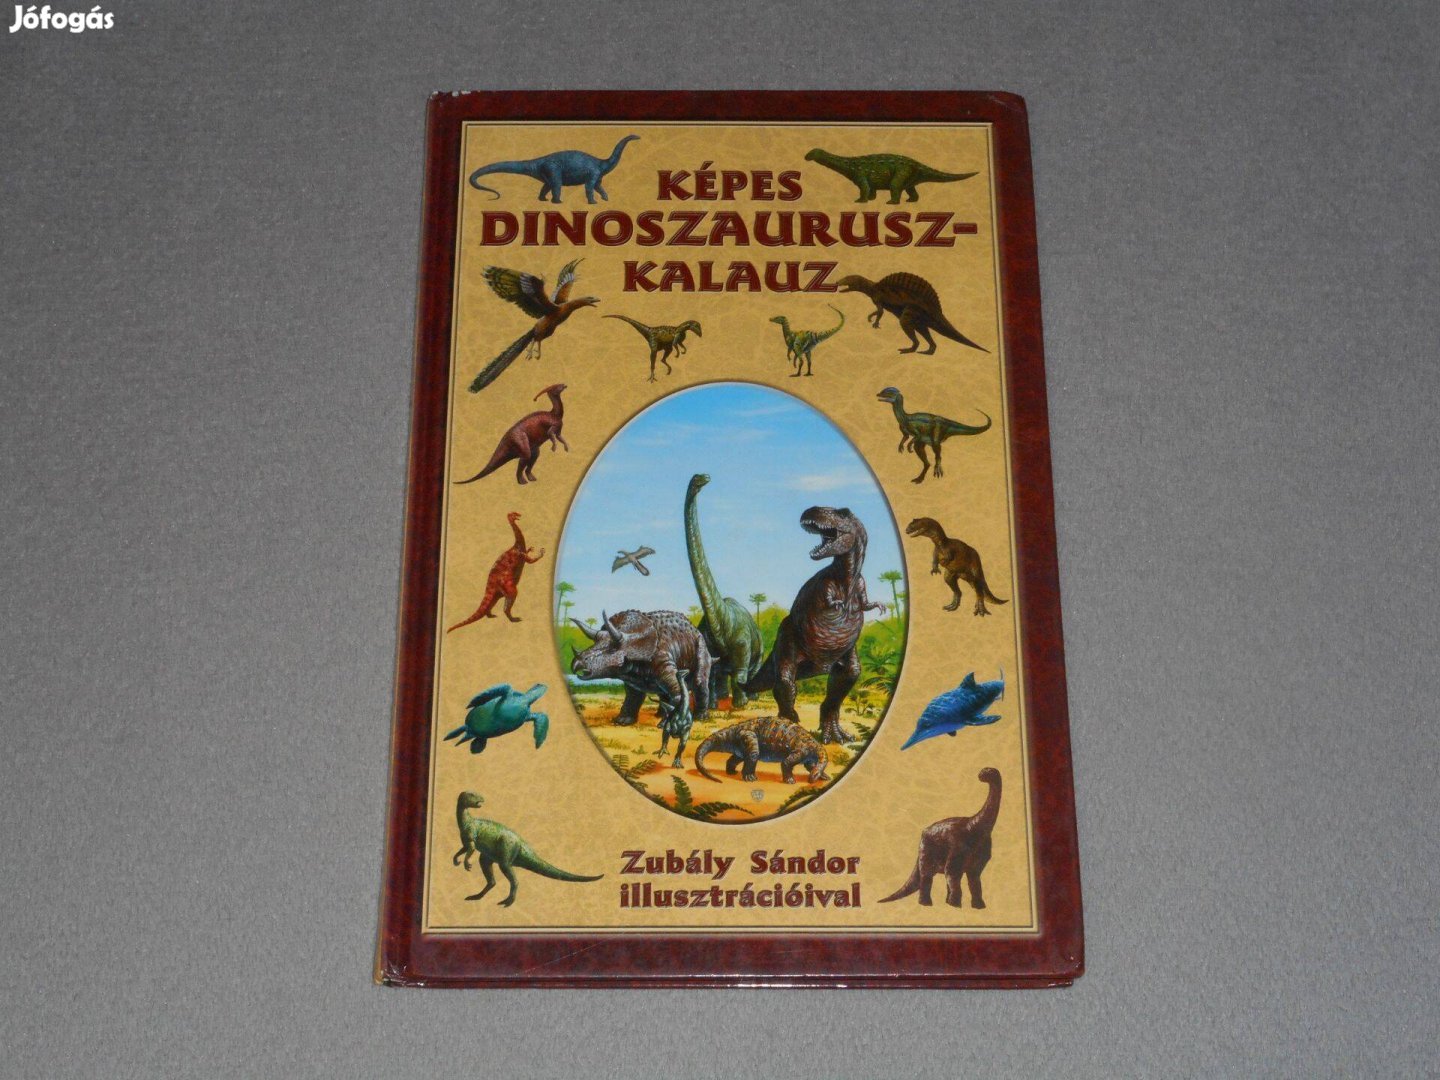 Zubály Sándor - Képes dinoszaurusz-kalauz / dinoszaurusz kalauz